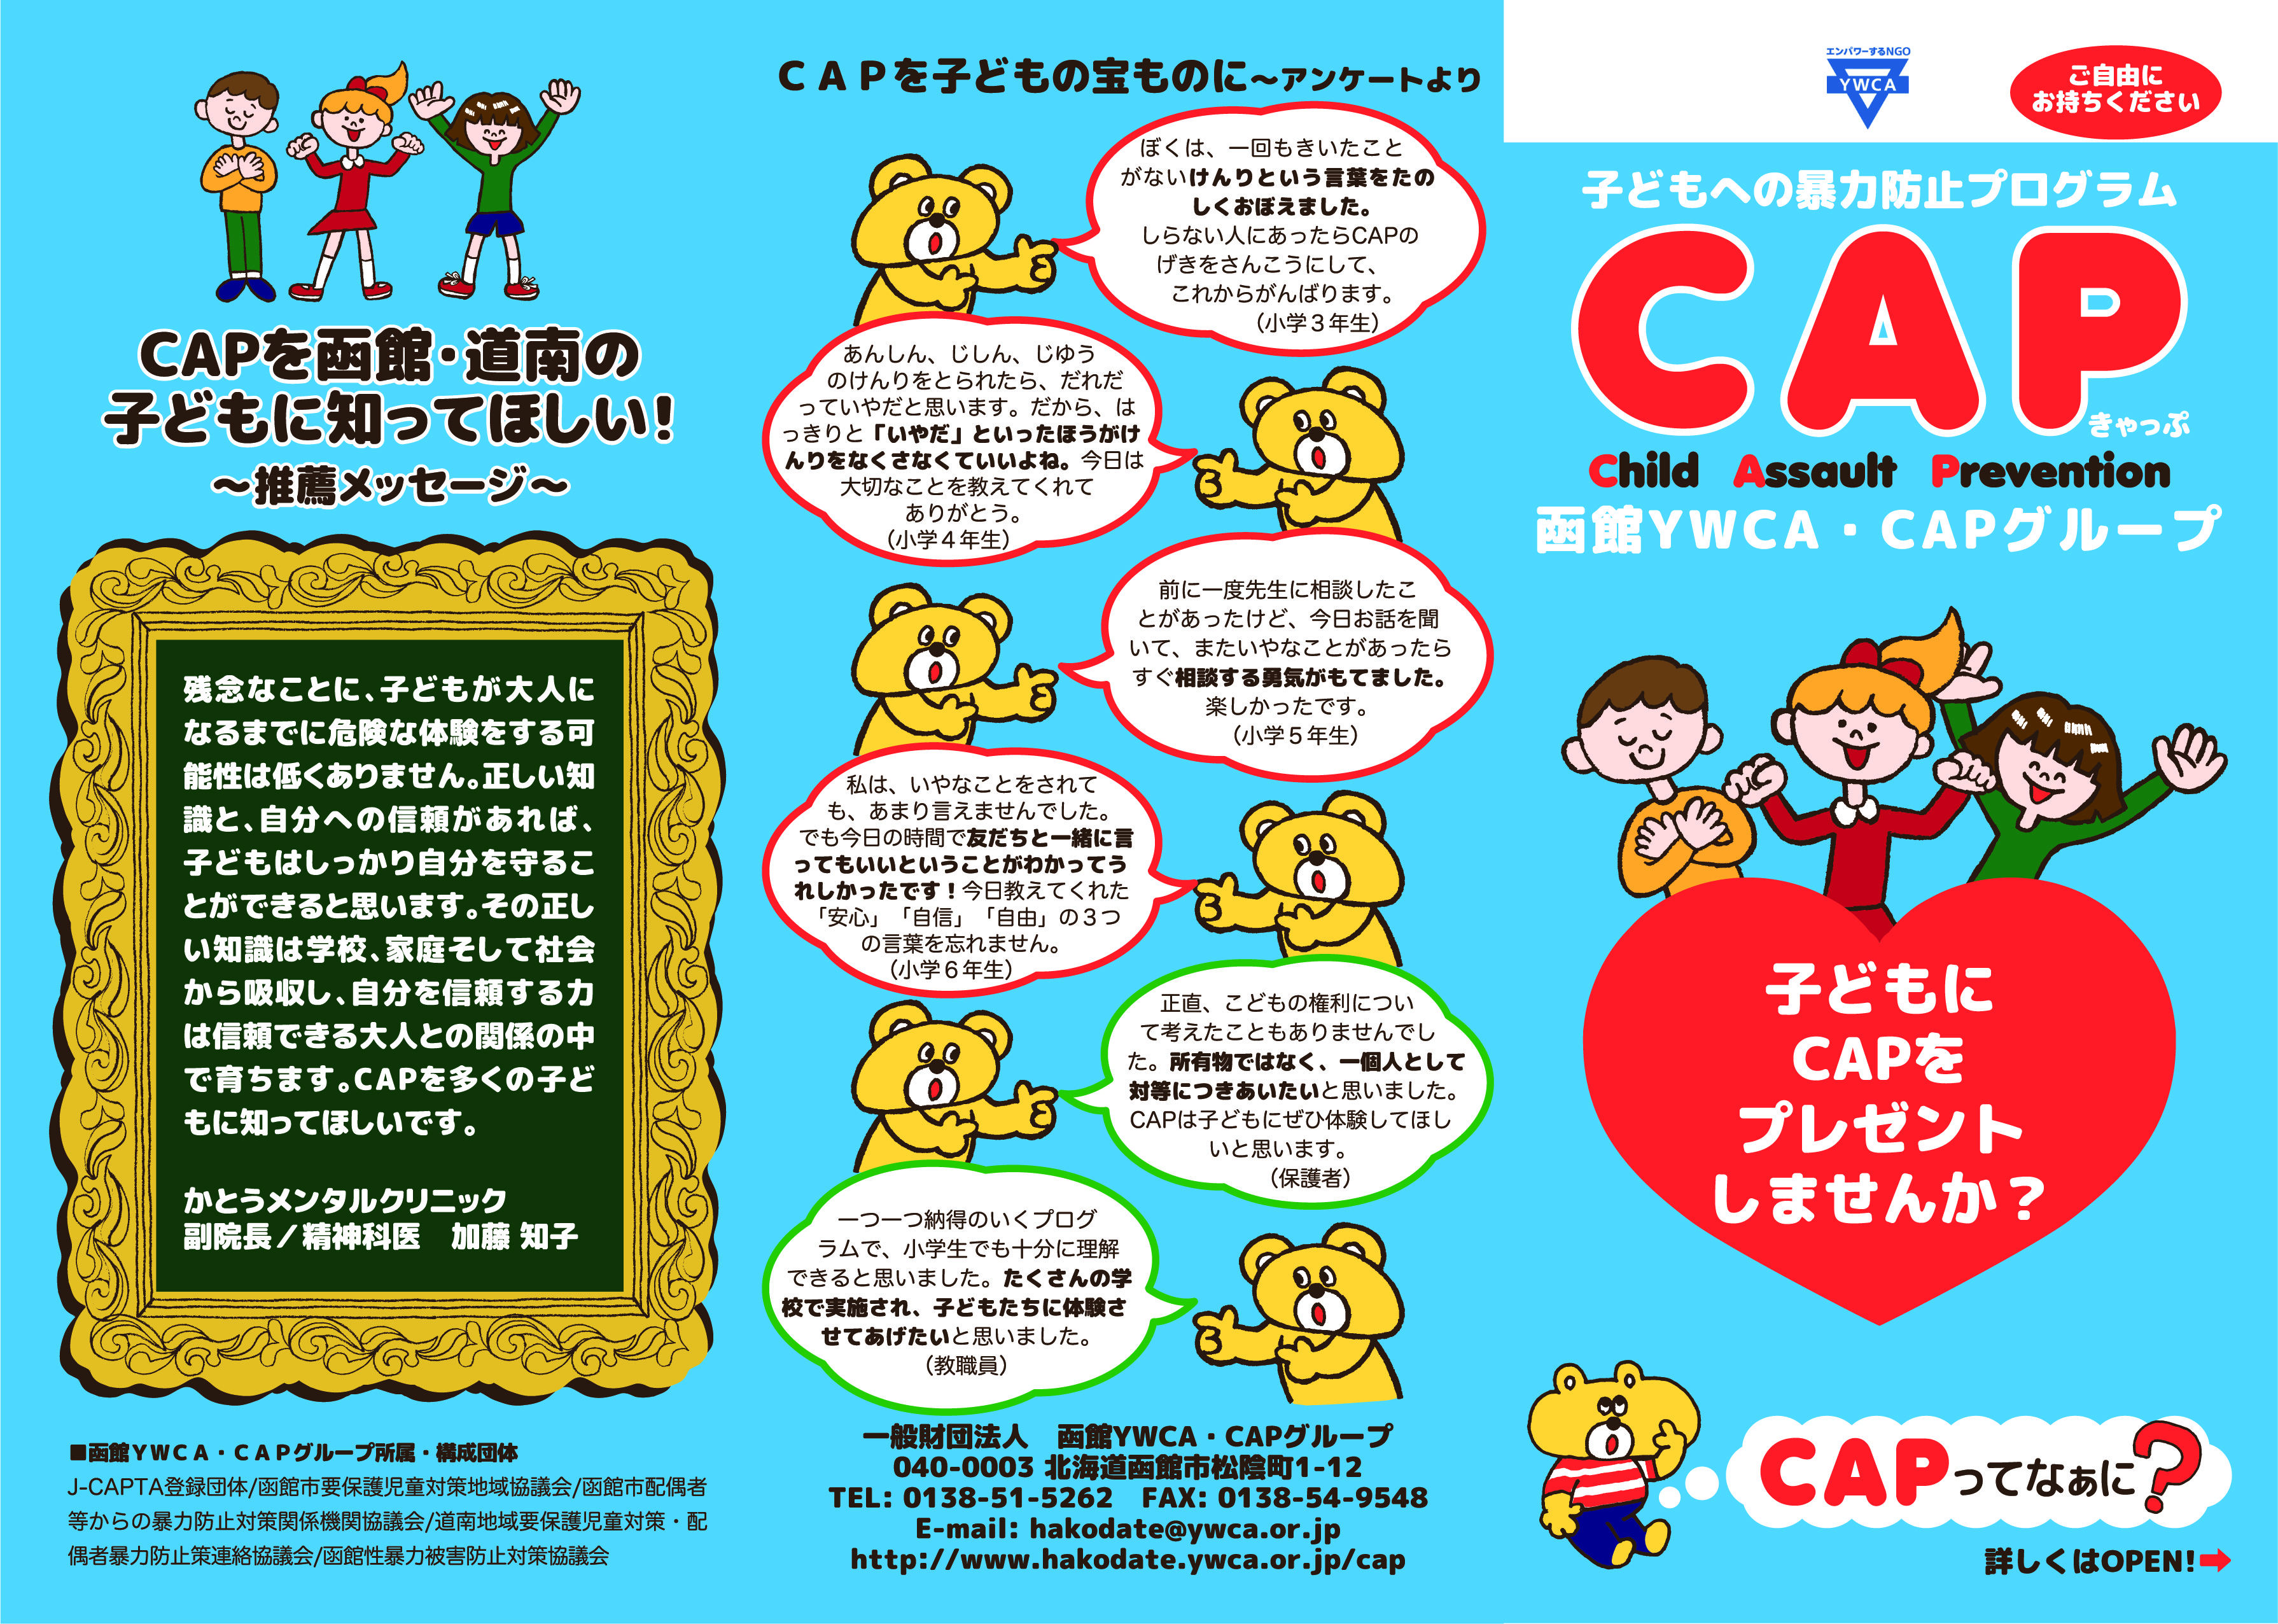 Cap キャップ 子どもへの暴力防止プログラム 一般財団法人 函館ywca